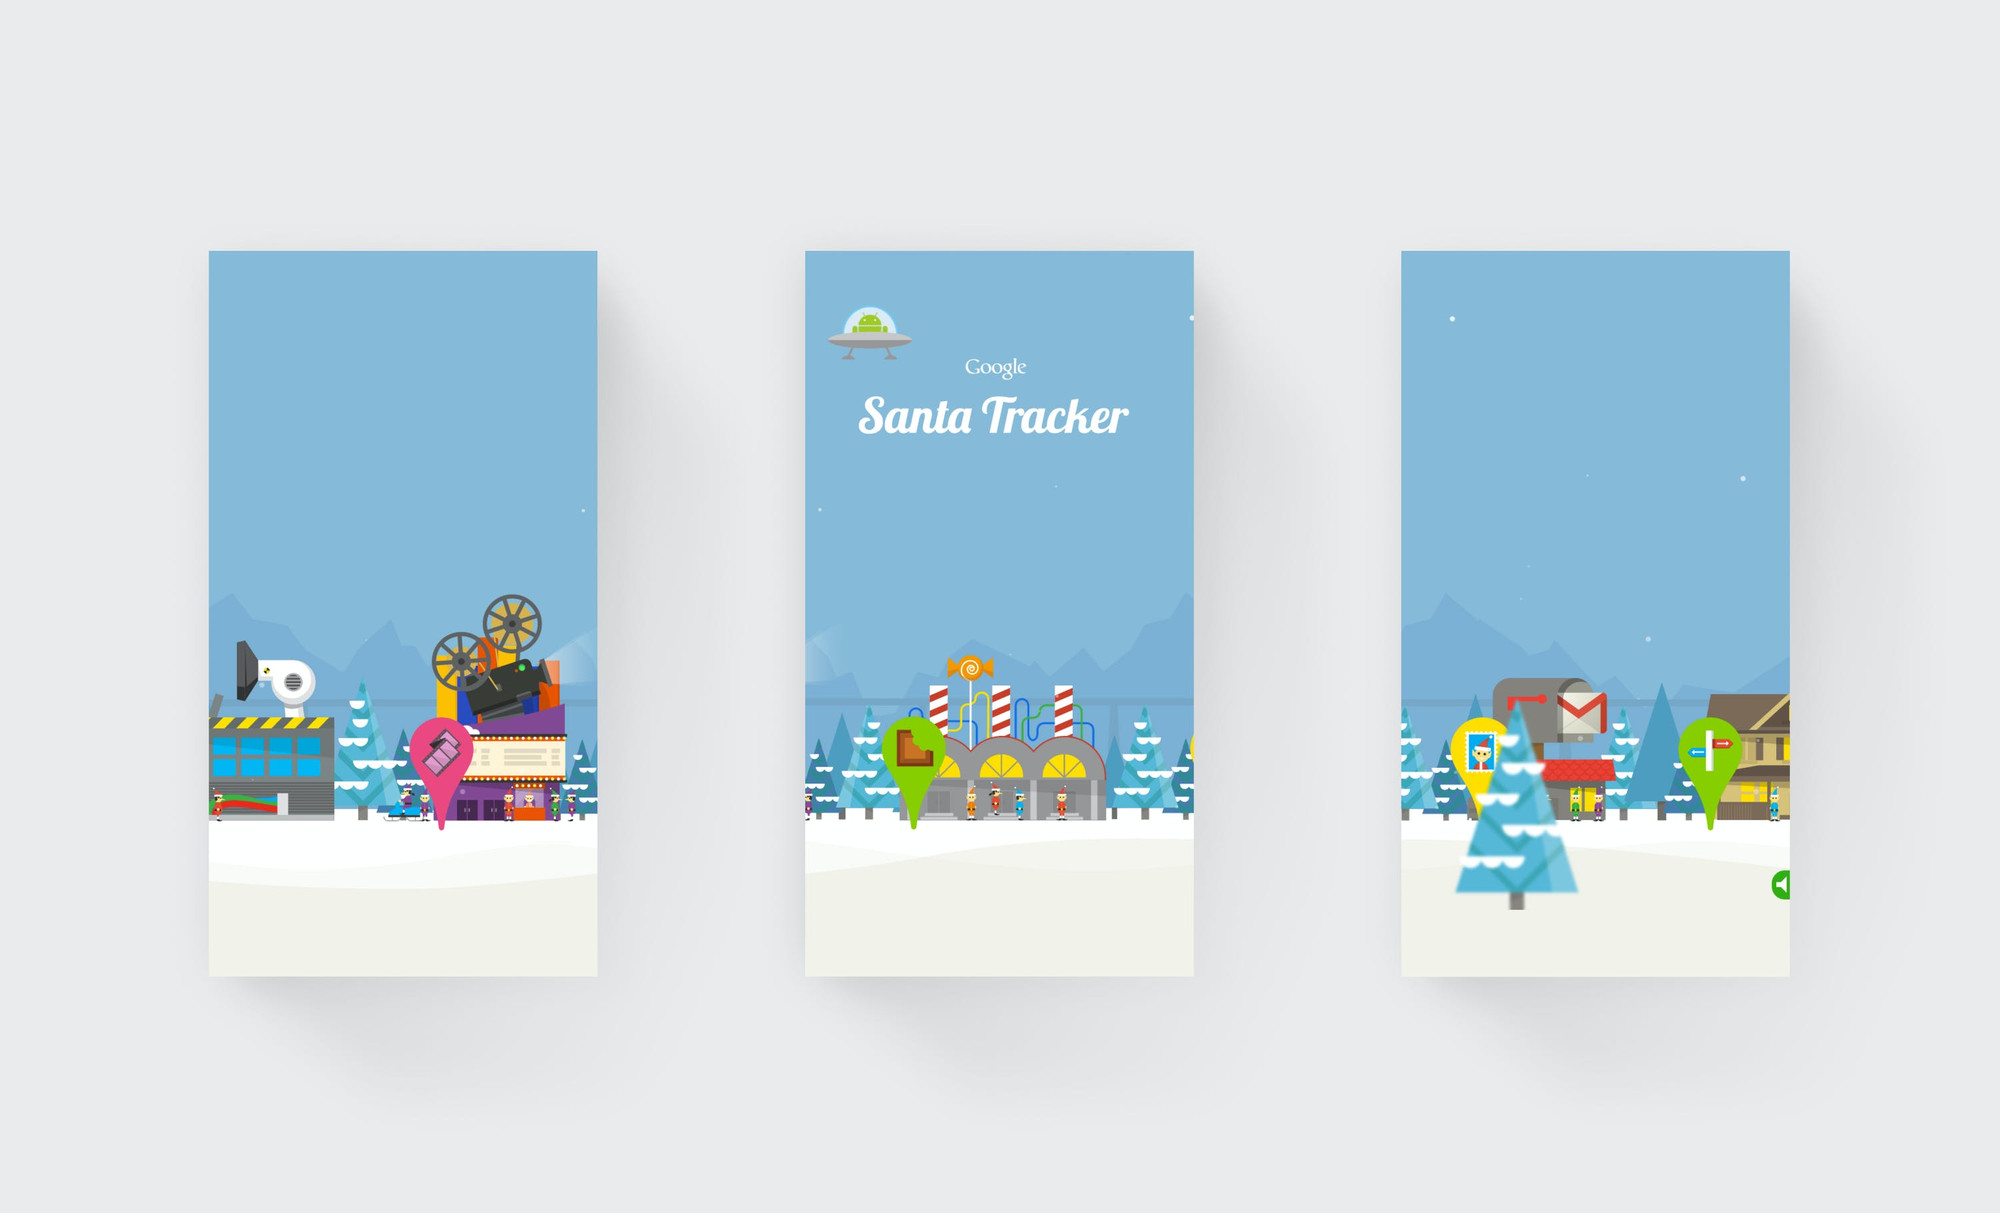 3 images of the Google Santa Tracker landscape